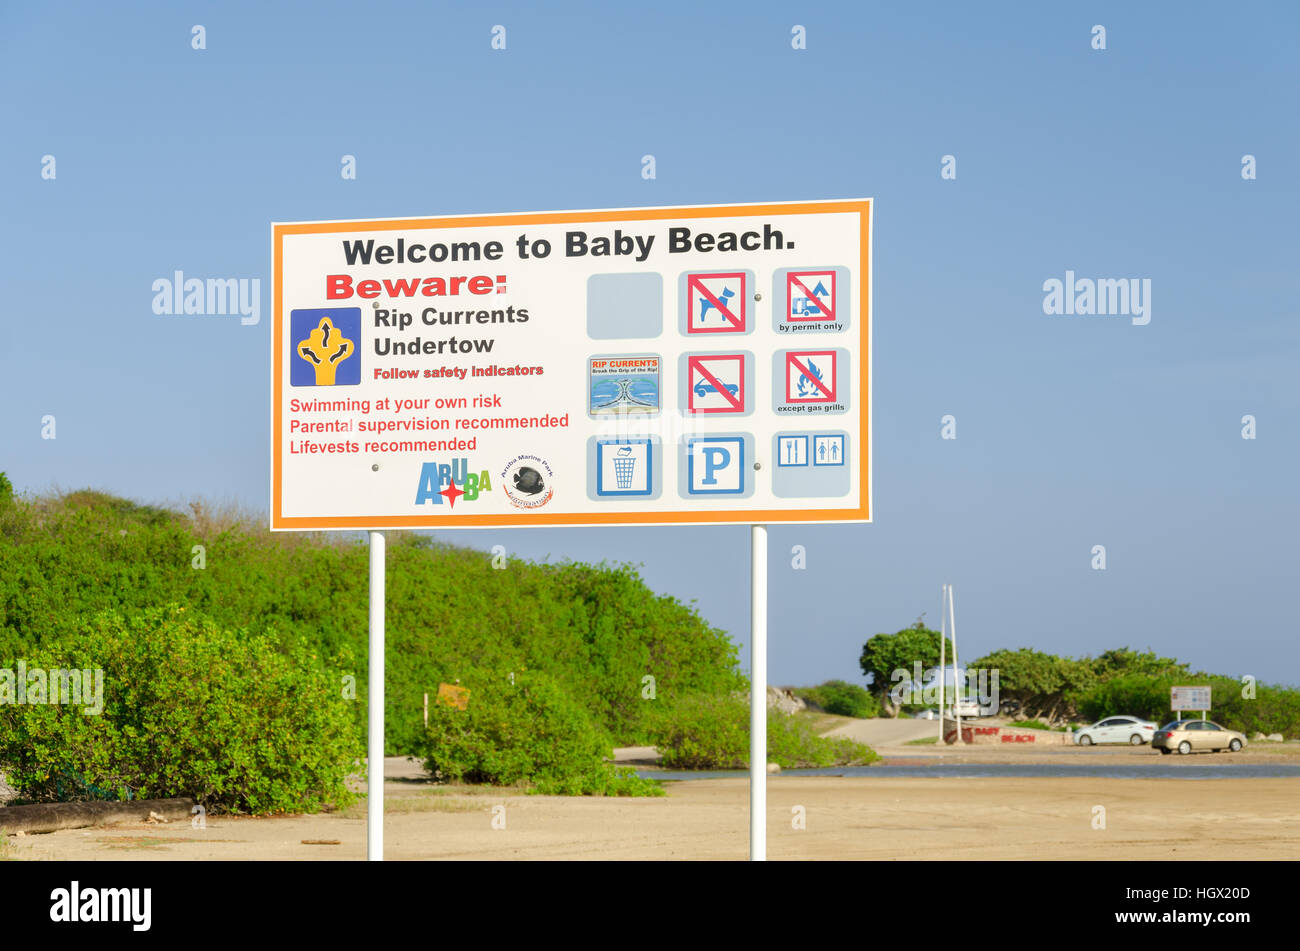 Aruba, dei Caraibi - 26 Settembre 2012: ingresso vista del baby beach ad Aruba isola del Mar dei Caraibi Foto Stock